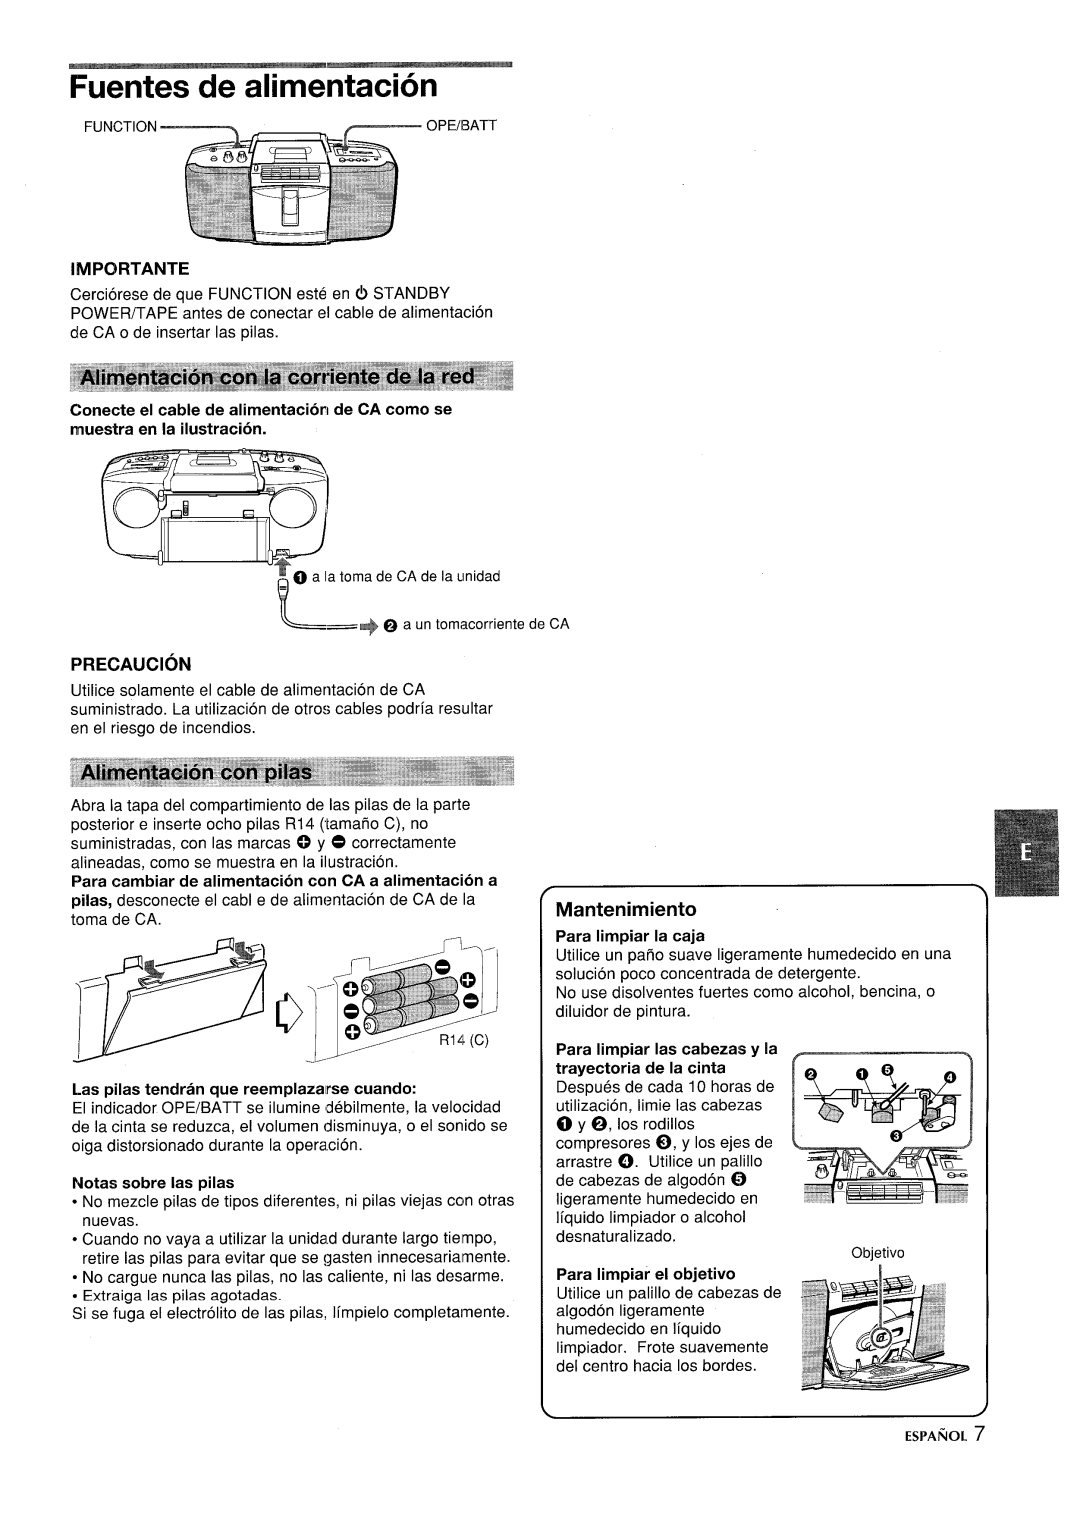 Aiwa CSD-SL15 manual Fuentes de alimentacion, Importante, Precaution, Para cambiar de alimentacion con CA a alimentacion a 